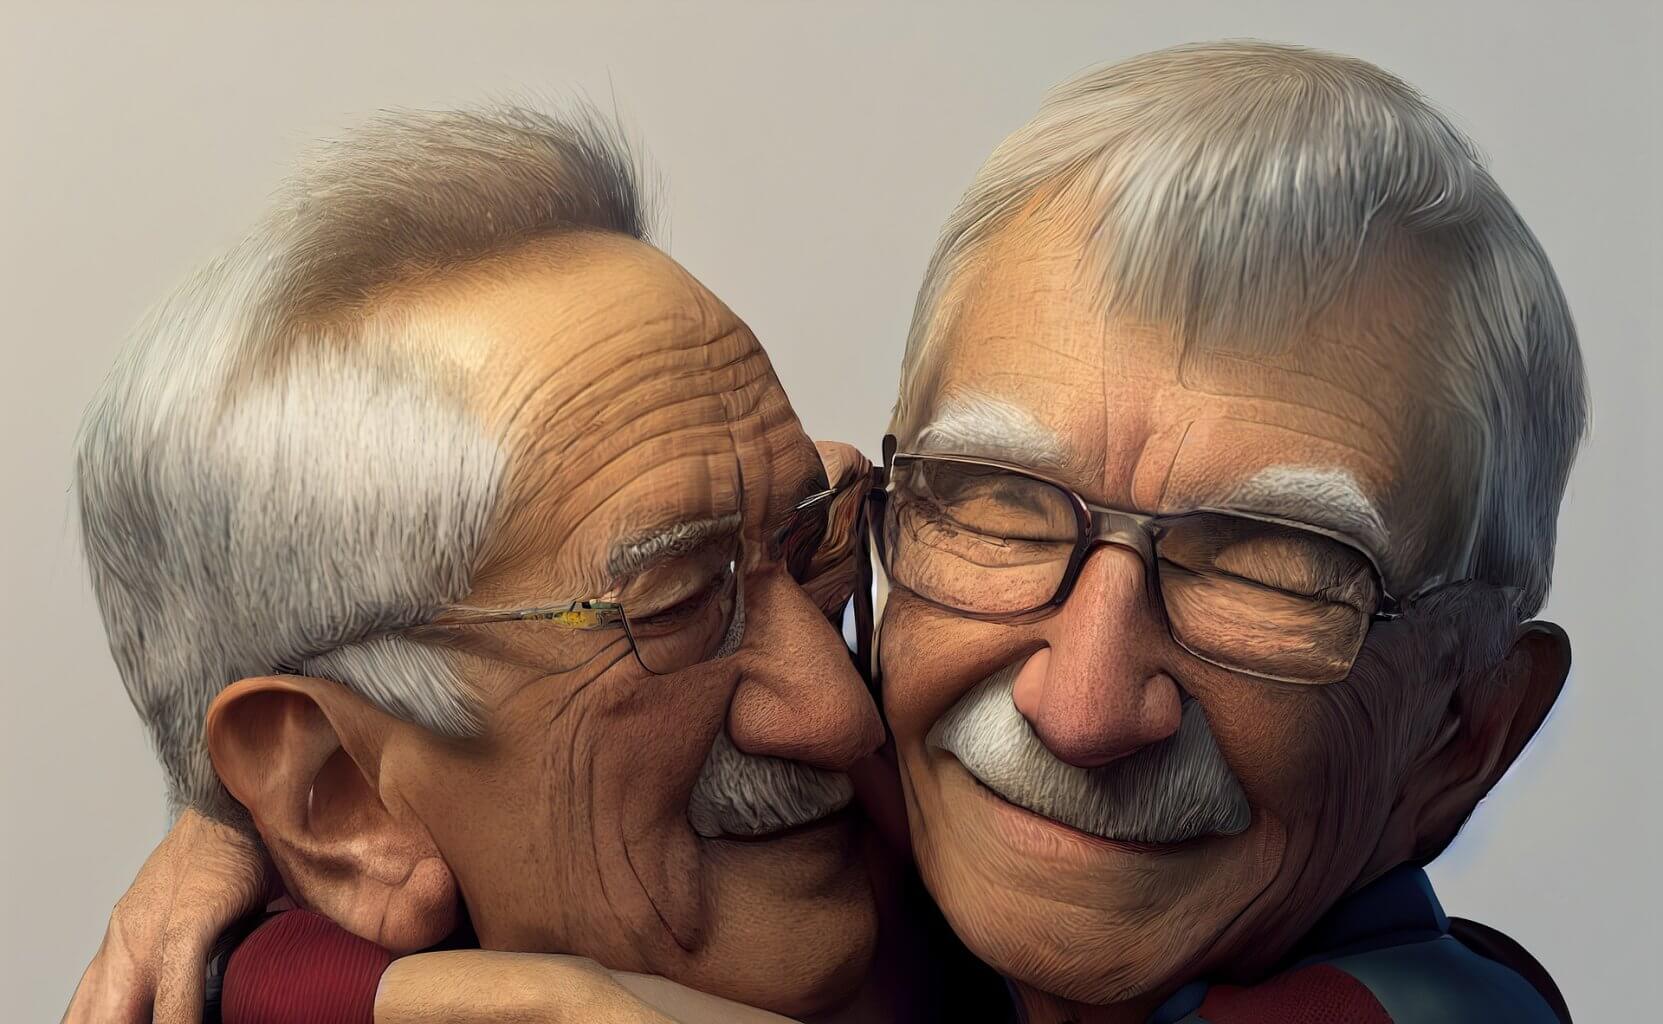 two older men embracing